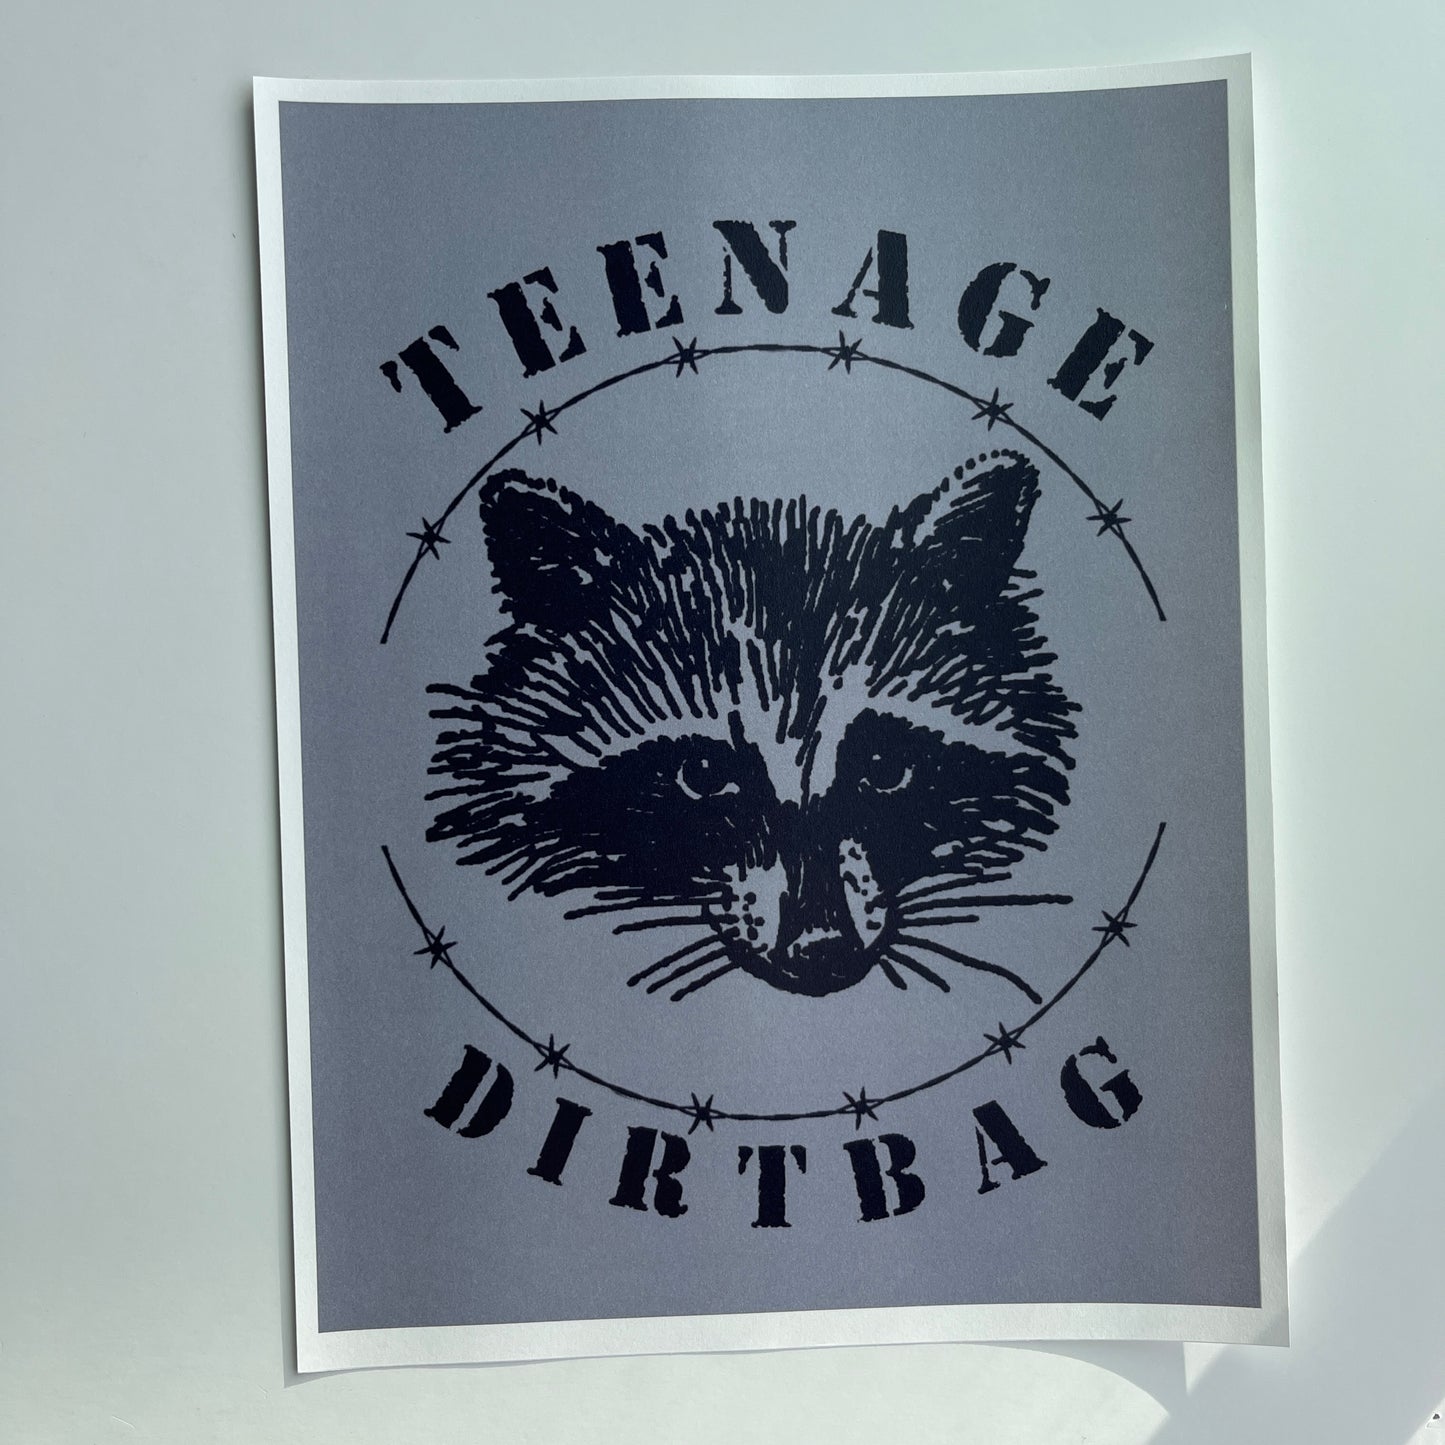 Teenage dirtbag poster